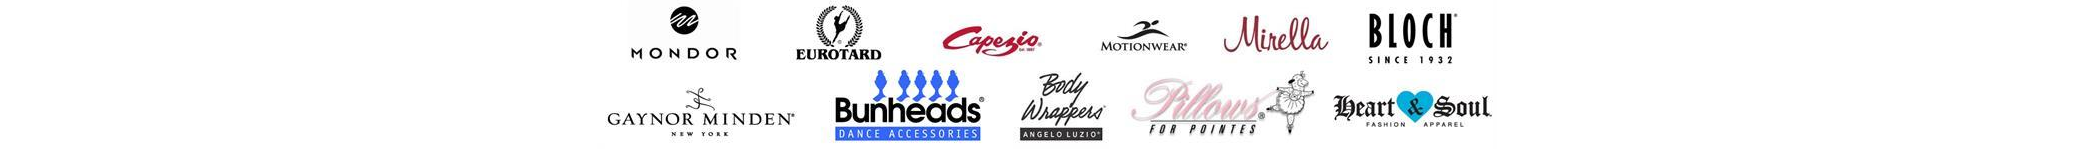 capezio bodywrapper bloch logos